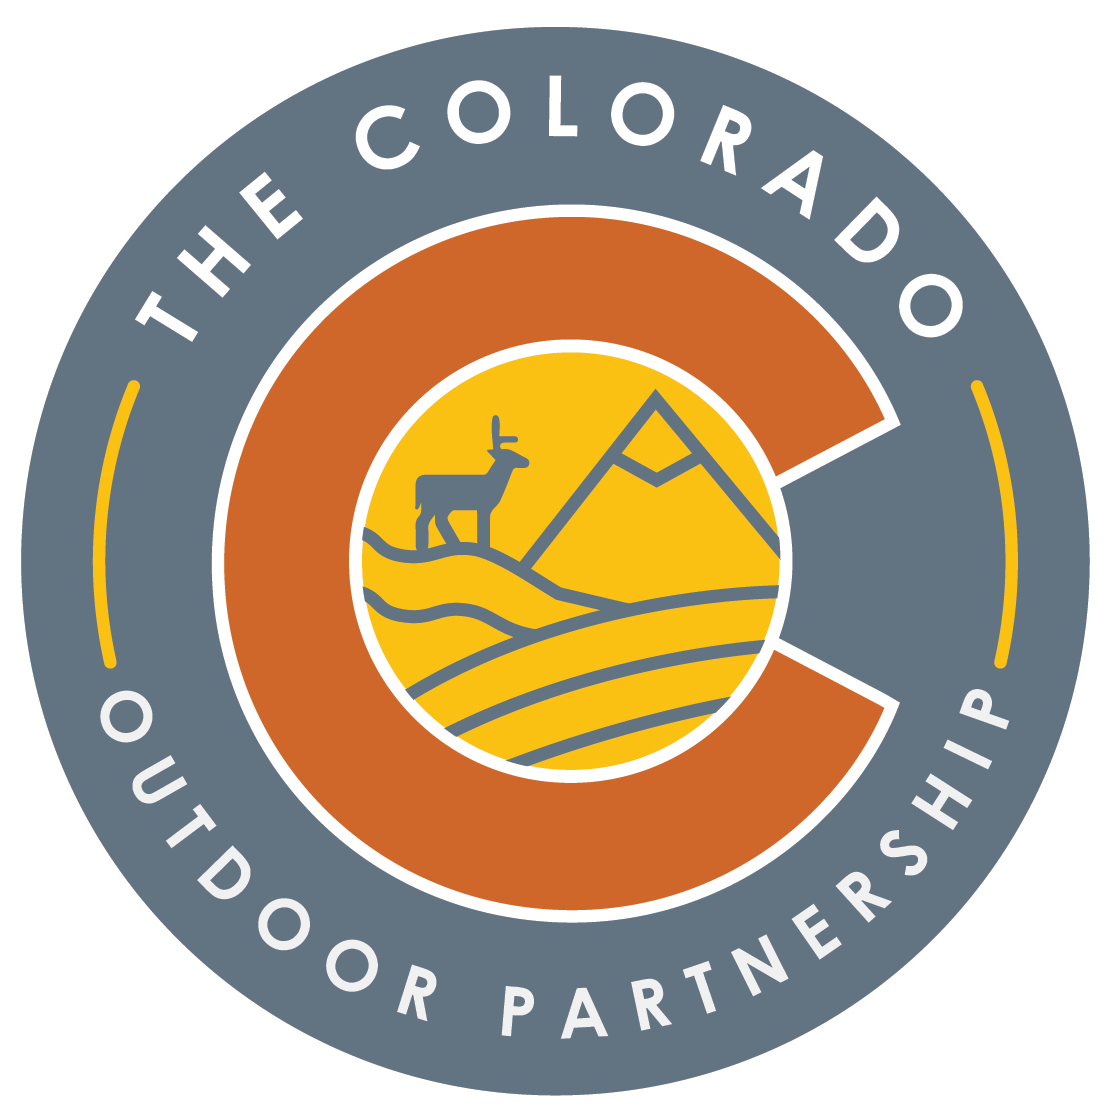 The Colorado Outdoor Partnership logo